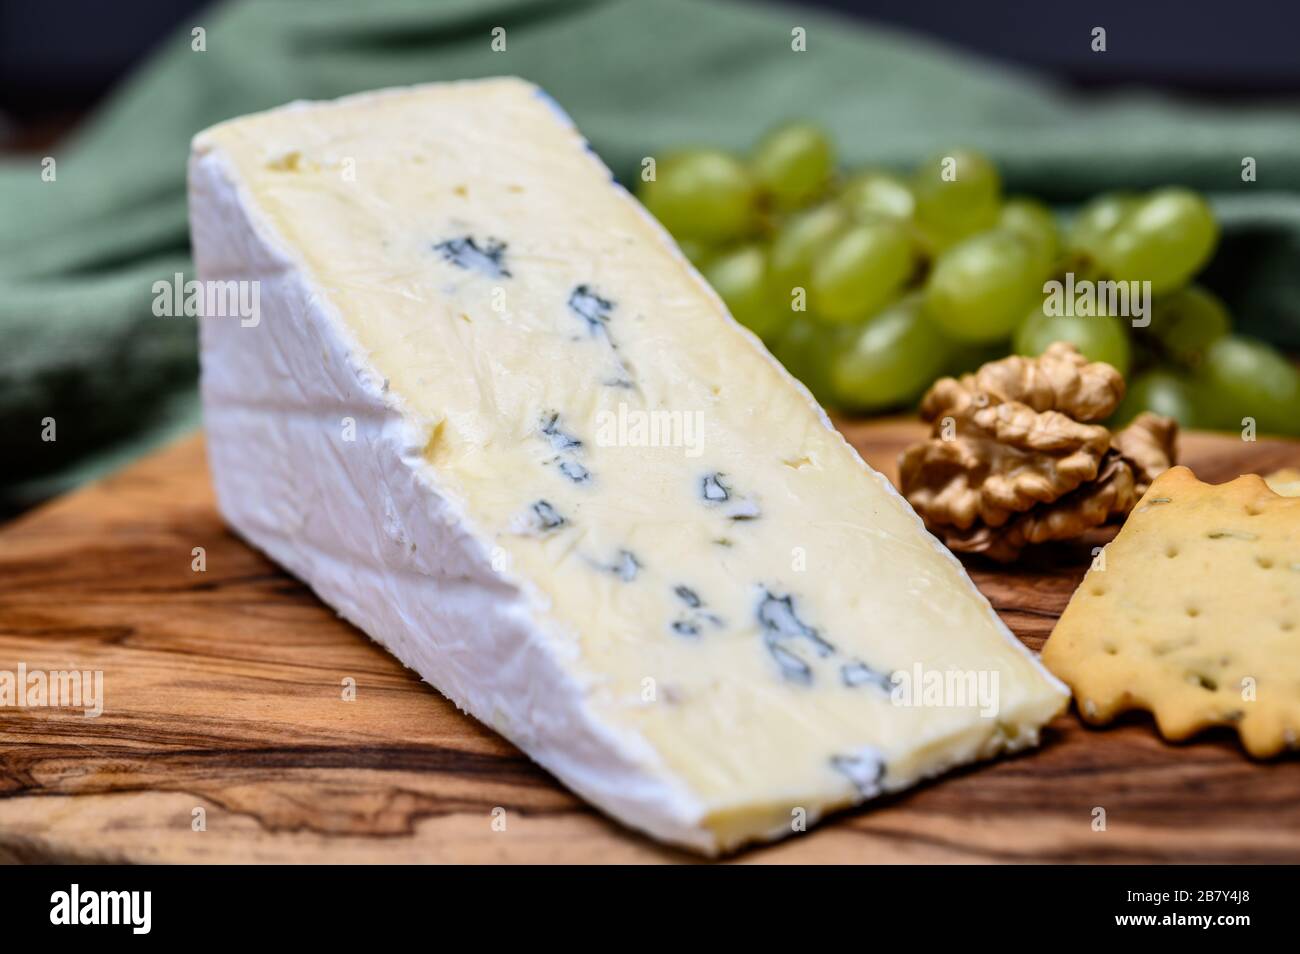 Collection de fromages, brie Cambodzola bleu crémeux allemand au fromage  tendre et au gros plan de la moisissure bleue Photo Stock - Alamy